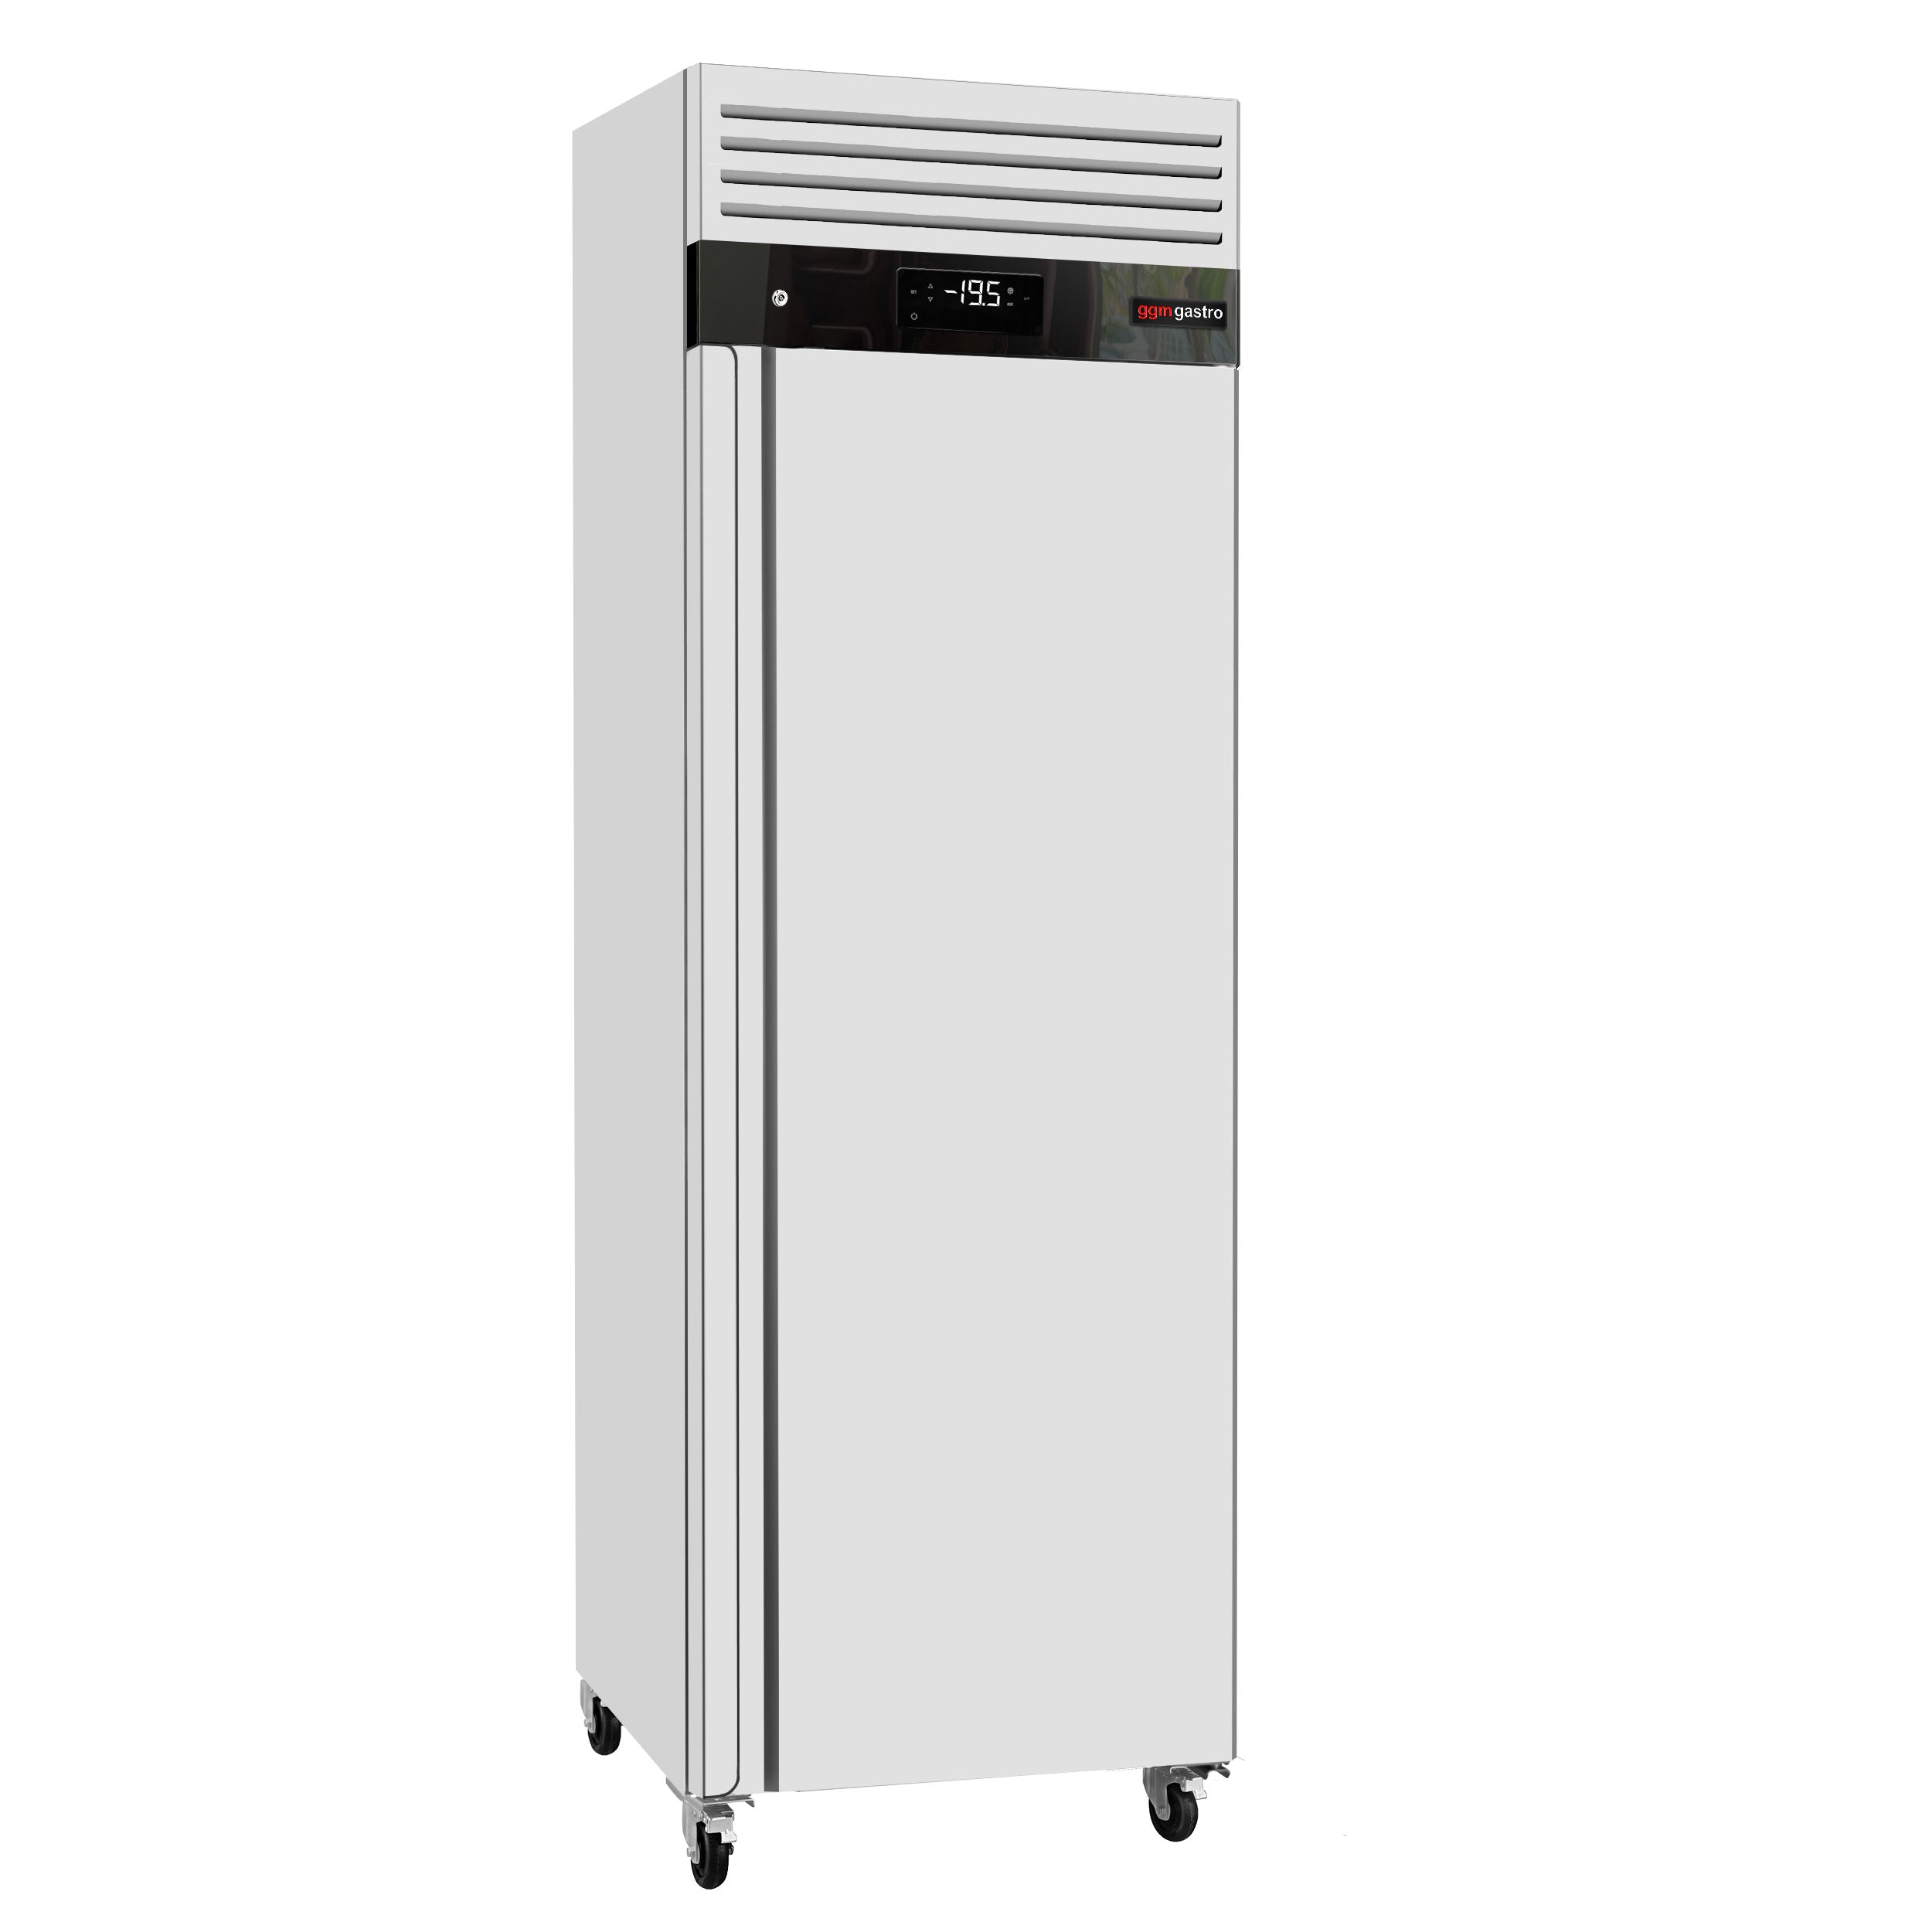 ECO-fryser - 600 liter - med 1 dør